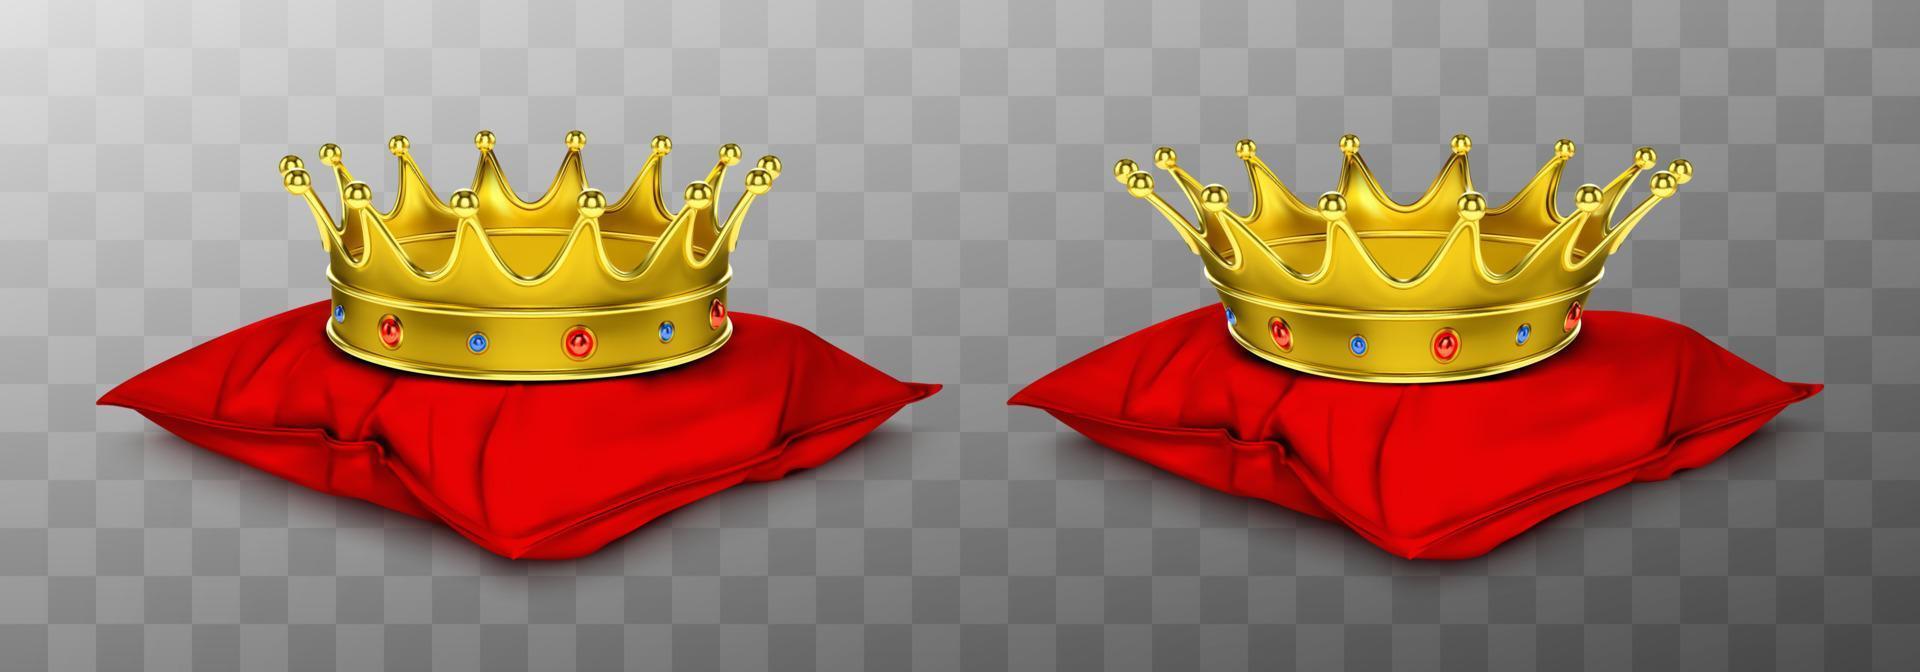 coroa real de ouro para rei e rainha no travesseiro vermelho vetor